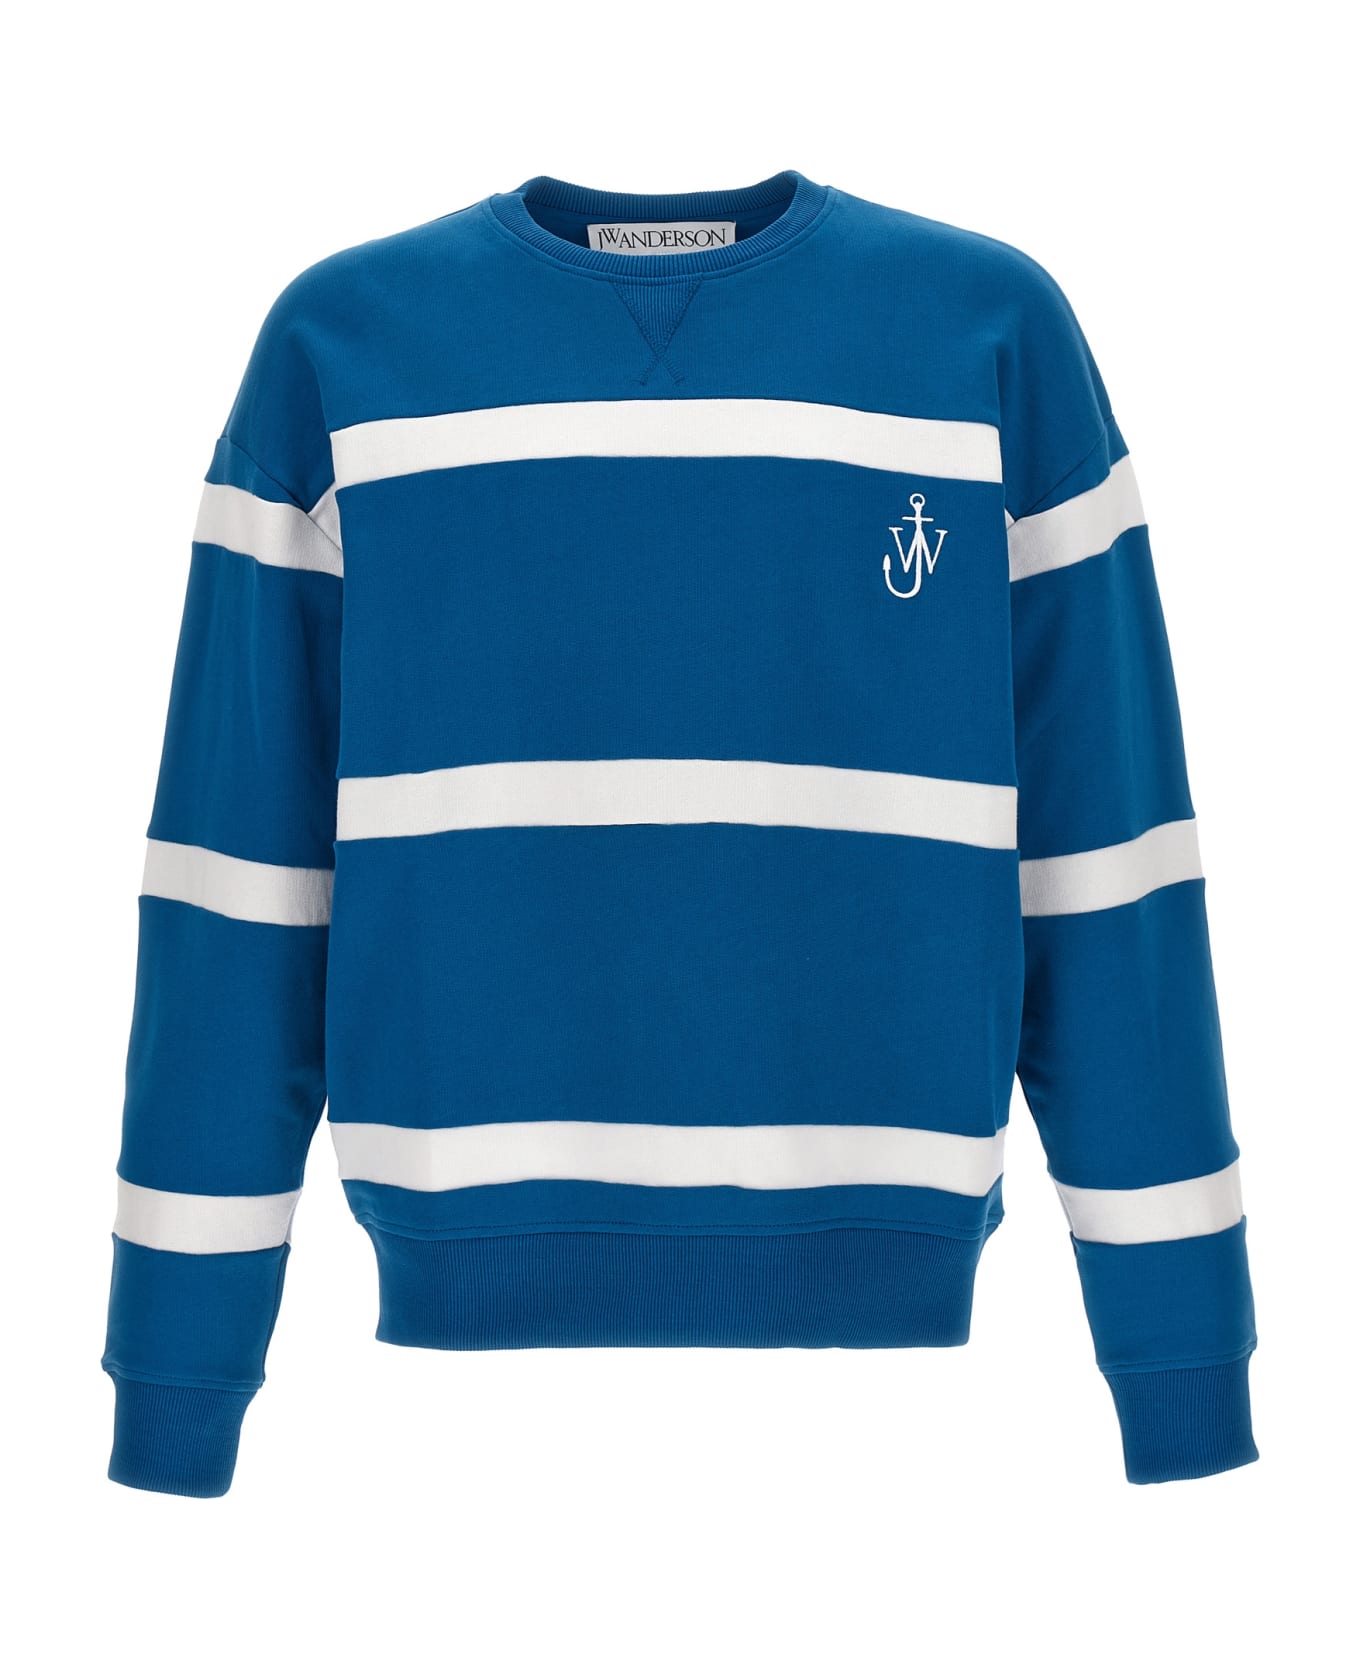 J.W. Anderson Striped Sweatshirt - Multicolor